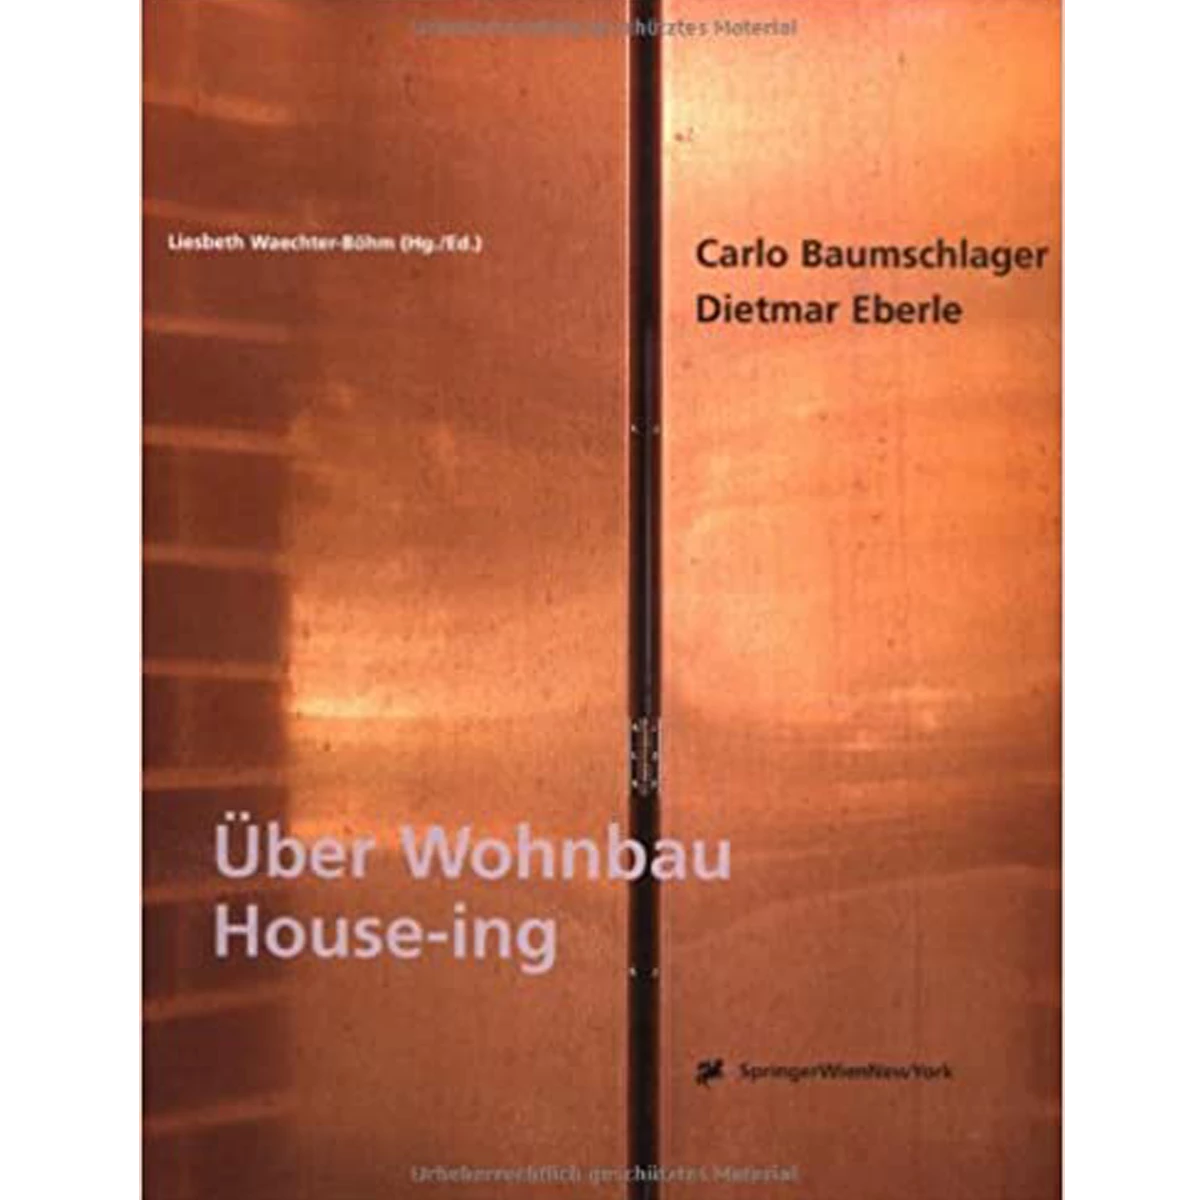 Carlo Baumschlager & Dietmar Eberle: House-ing